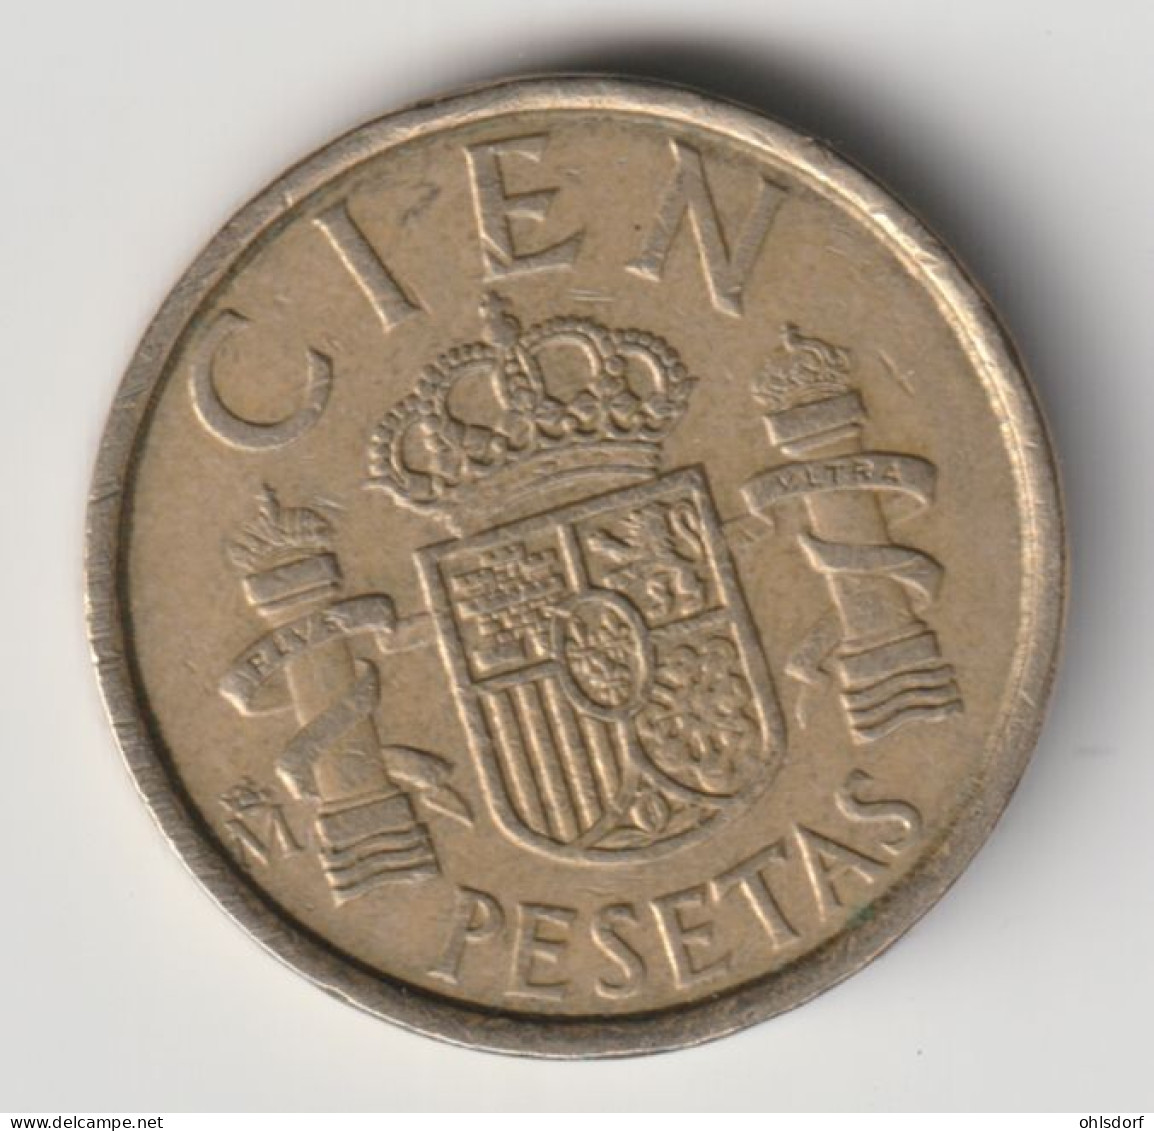 ESPANA 1986: 100 Pesetas, KM 826 - 100 Pesetas